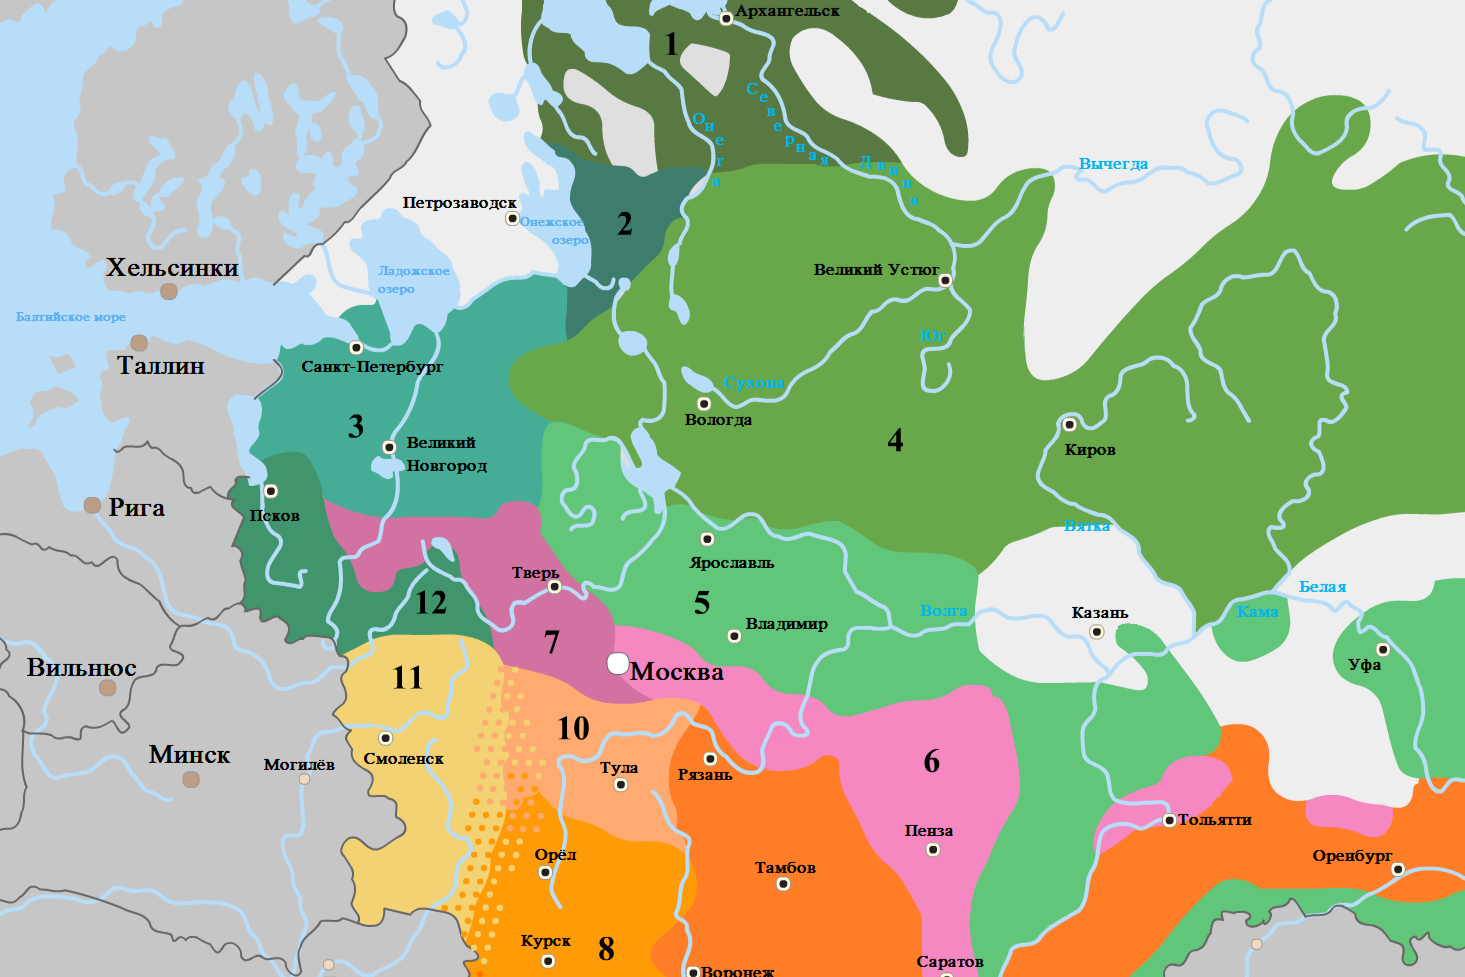 Roman Ronko | Baza podatkov Dialektološkega atlasa ruskega jezika